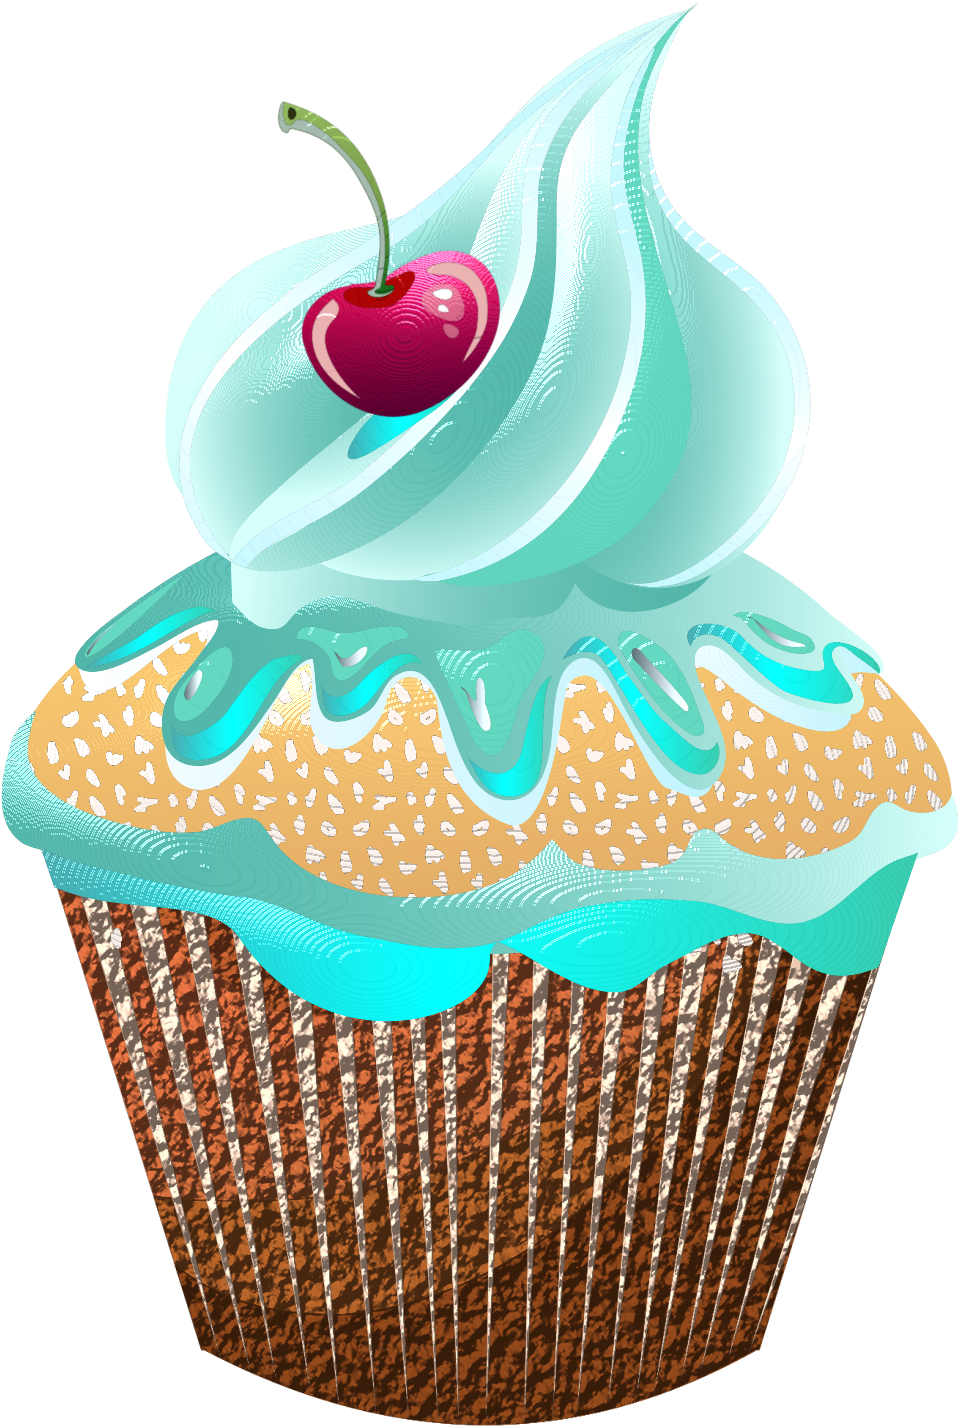 Dekopaj - Cupcake (1148x1500)